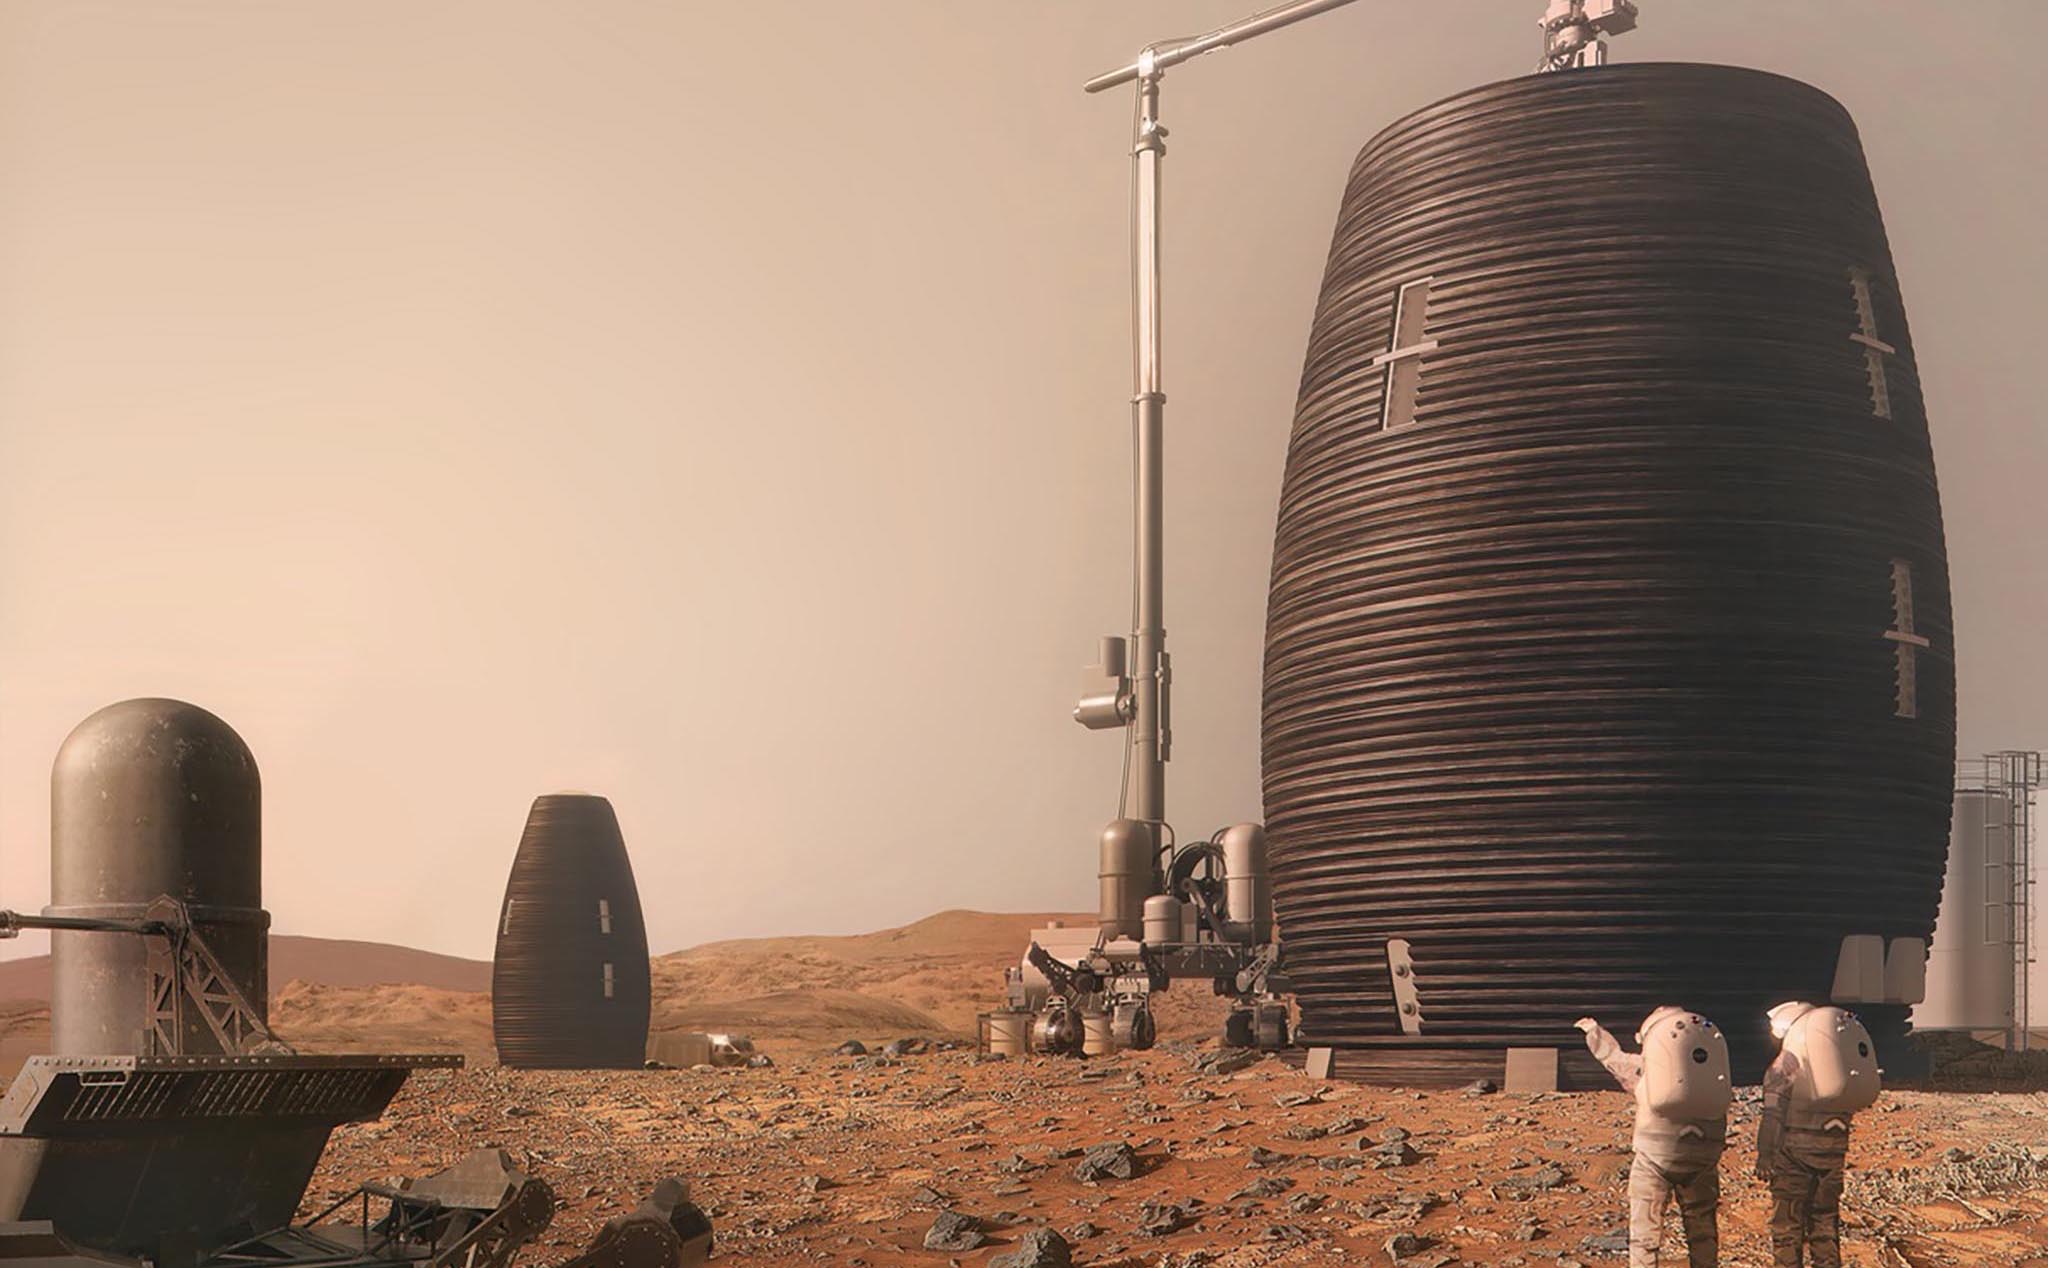 Mẫu nhà sao Hỏa vừa thắng giải nhất cuộc thi thiết kế của NASA